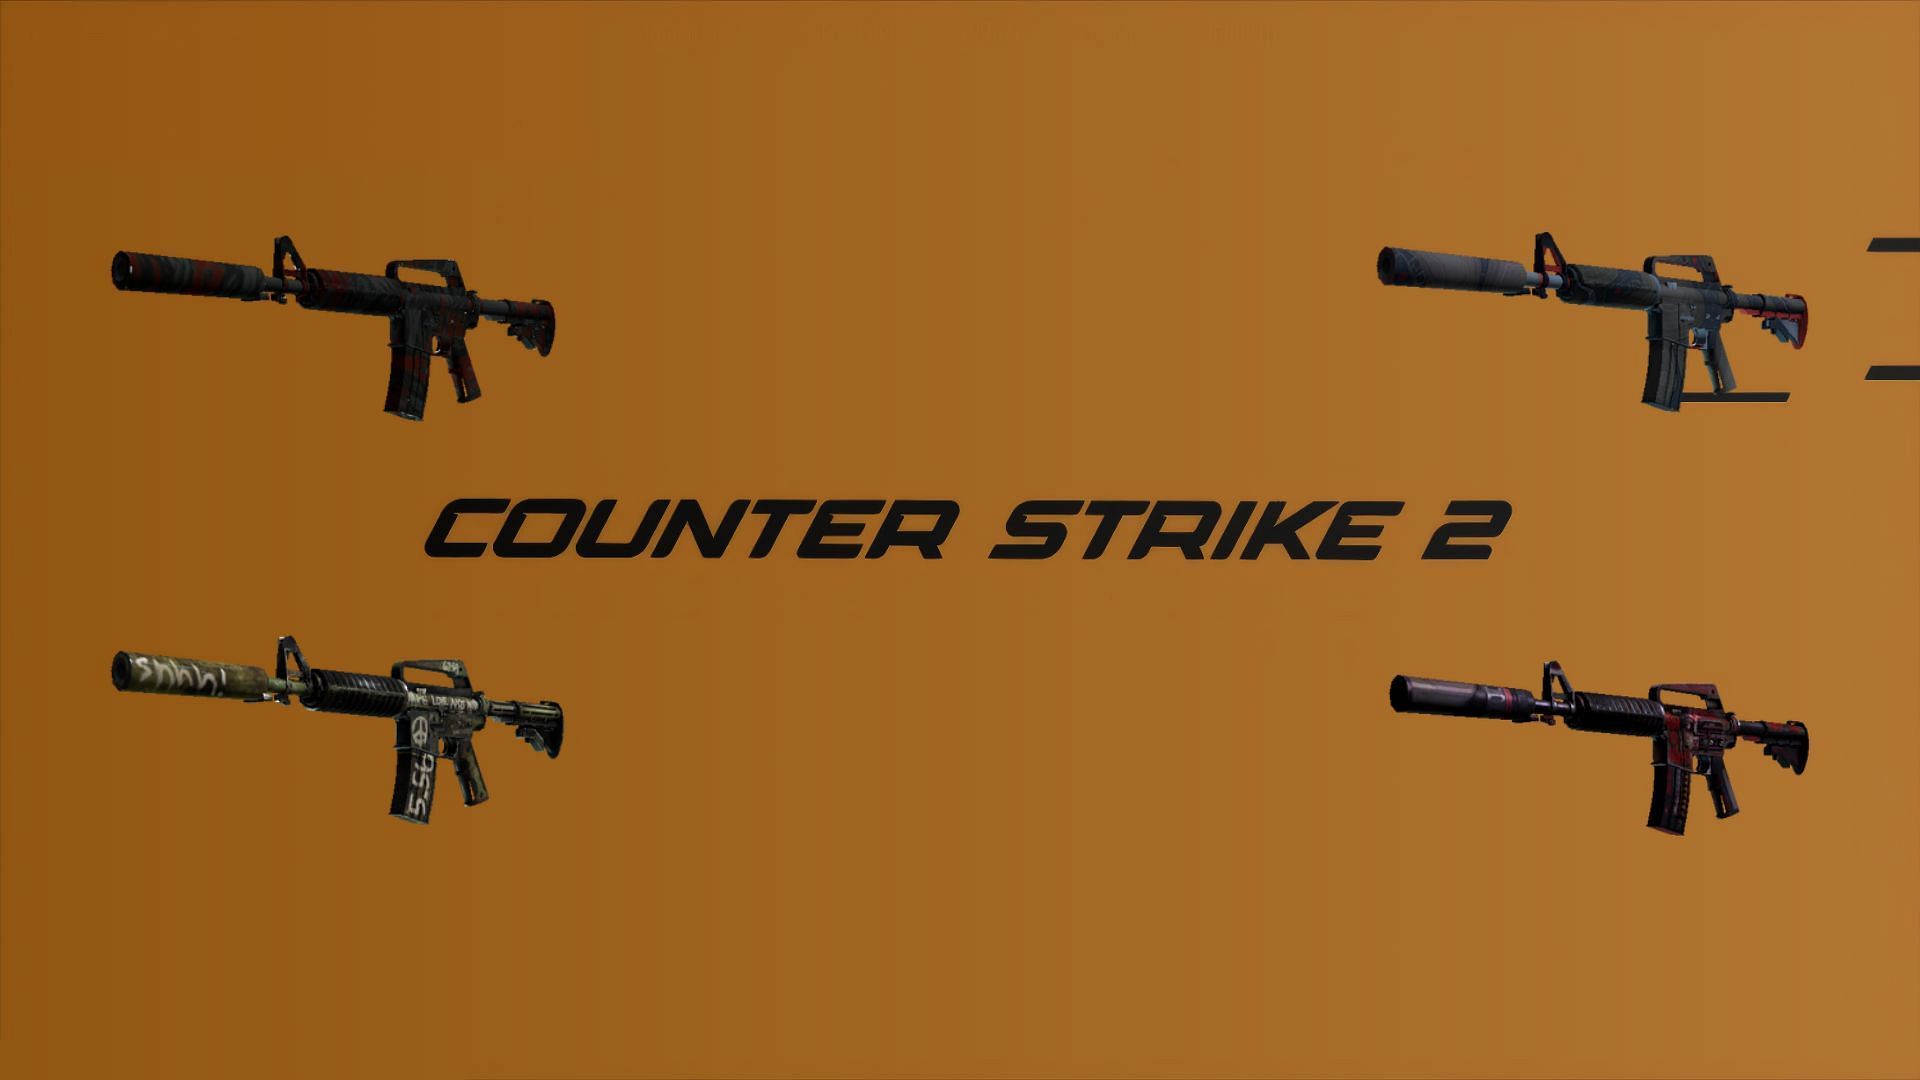 7 best M4A1-S skins in Counter-Strike 2 (CS2) under $10 (Image via Sportskeeda)